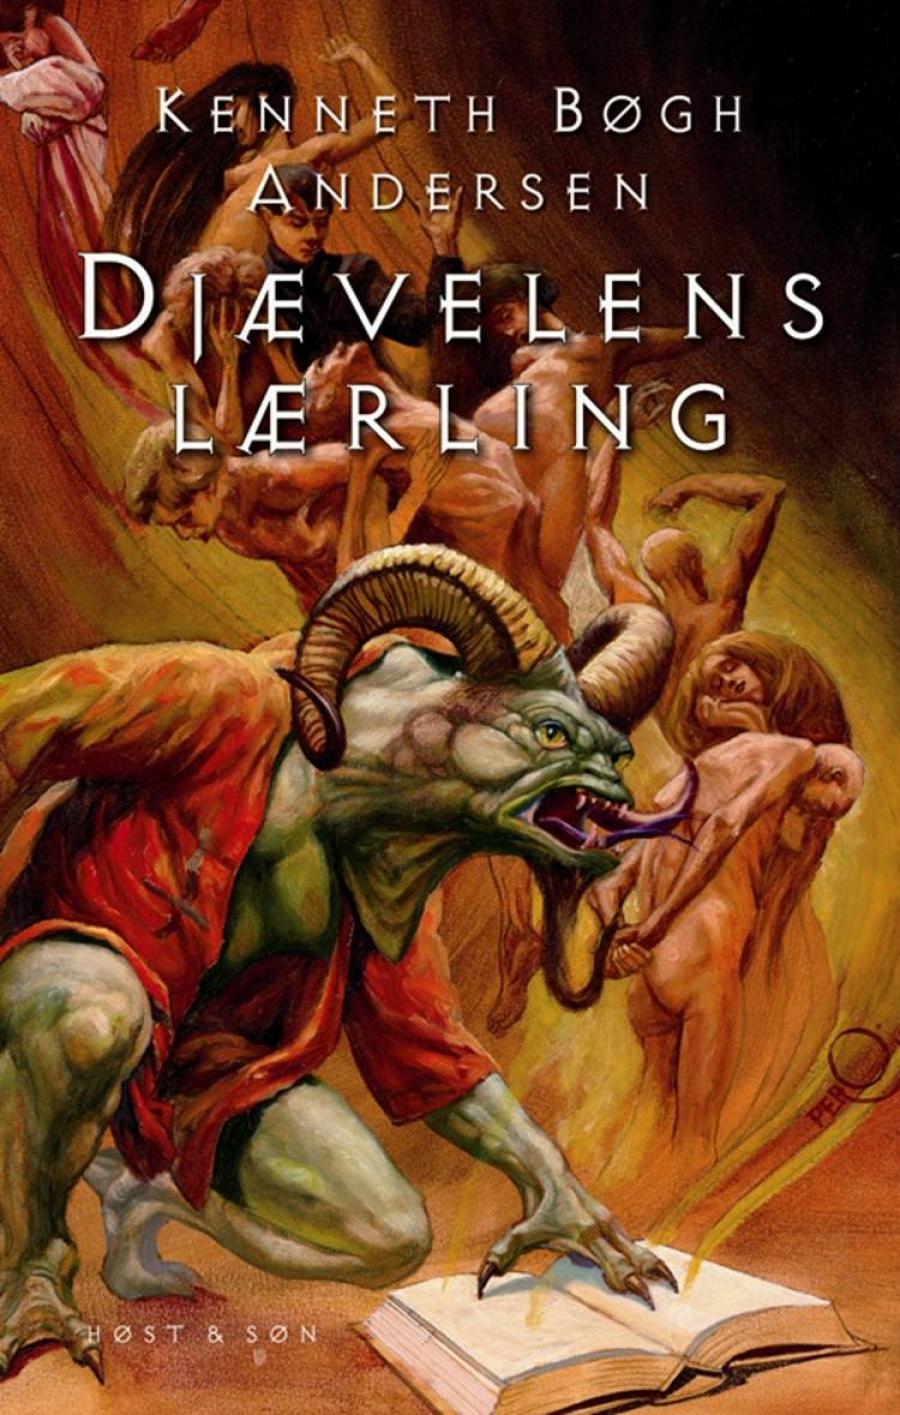 Forsiden til "Djævelens lærling" af Kenneth Bøgh Andersen